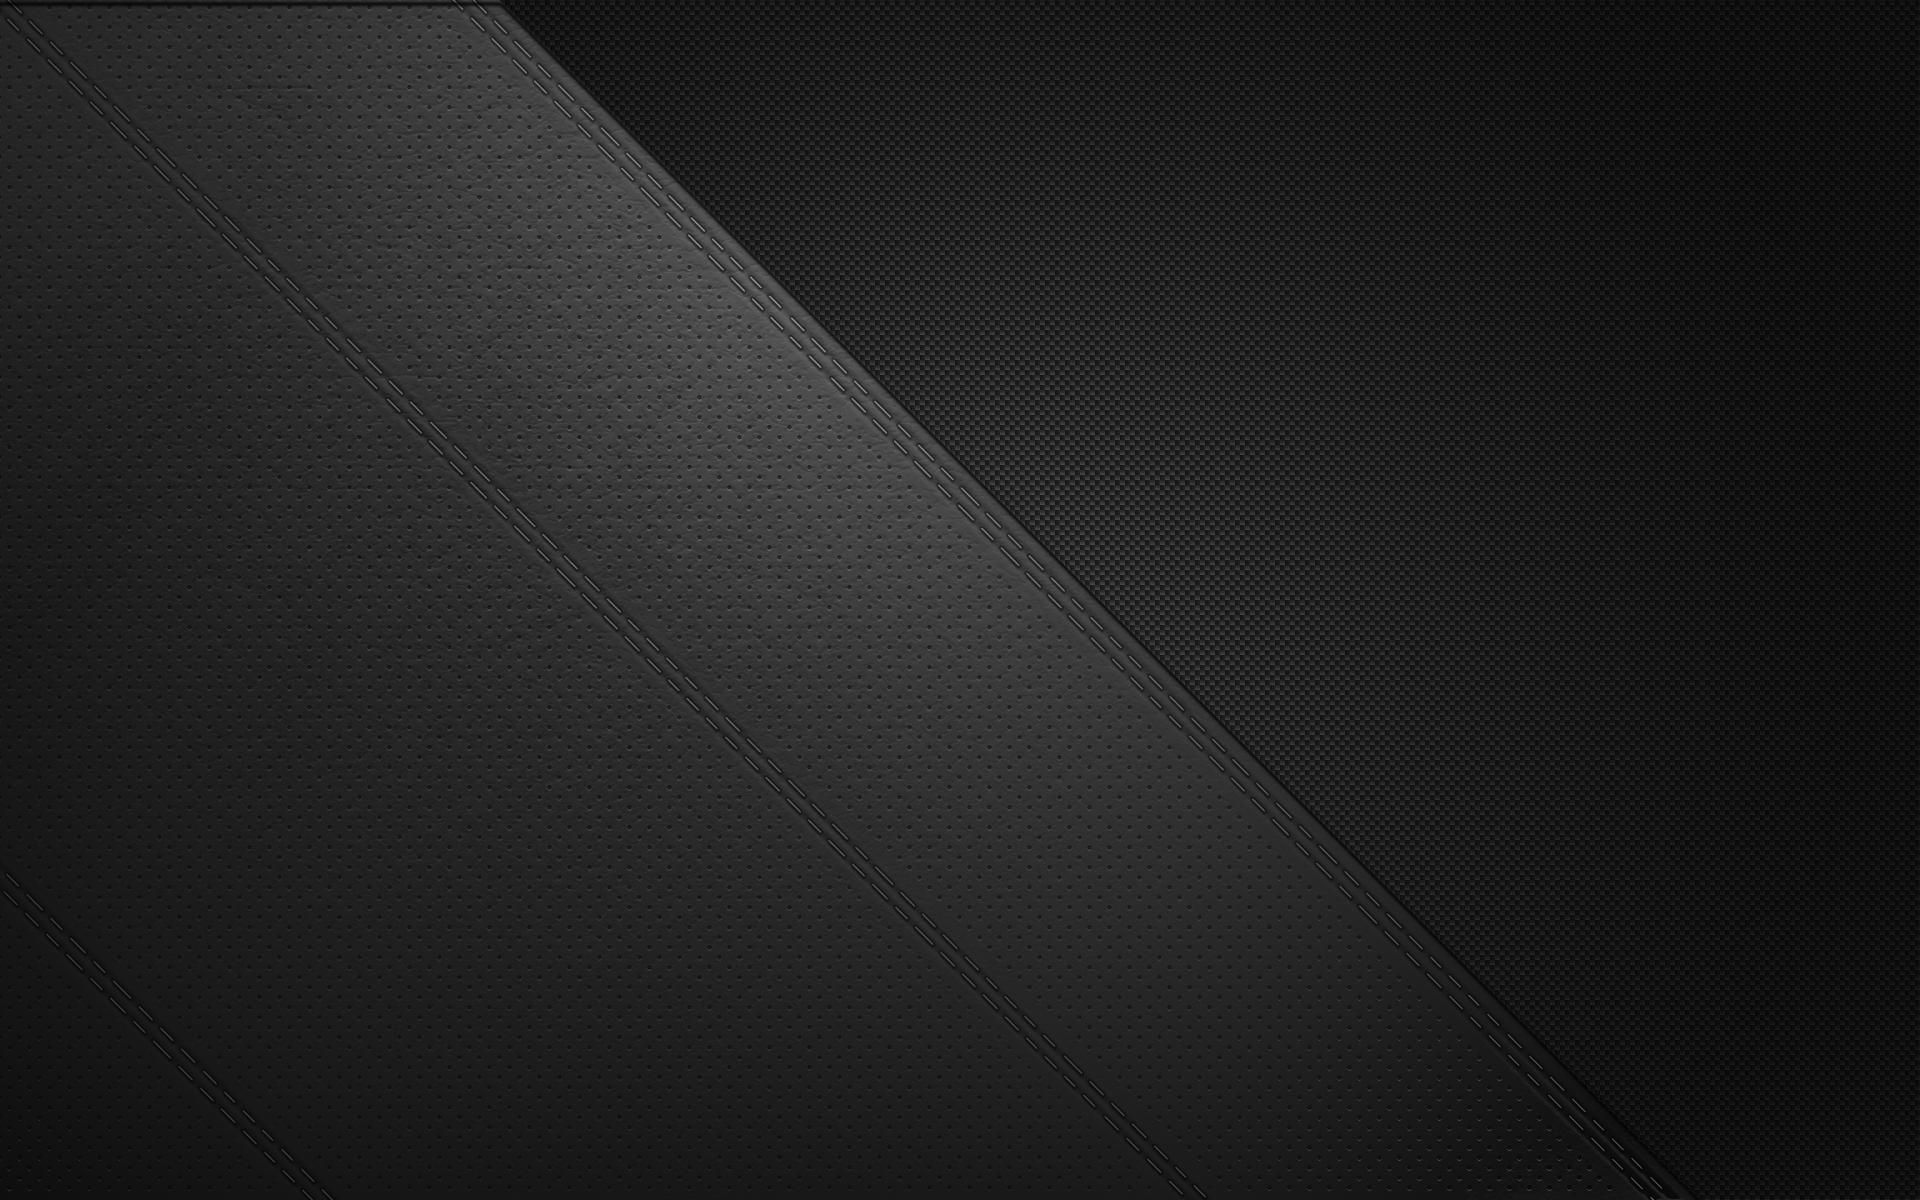 10+ Black Wallpapers - Descarga gratuita de formato JPG, PNG, PSD | Diseño